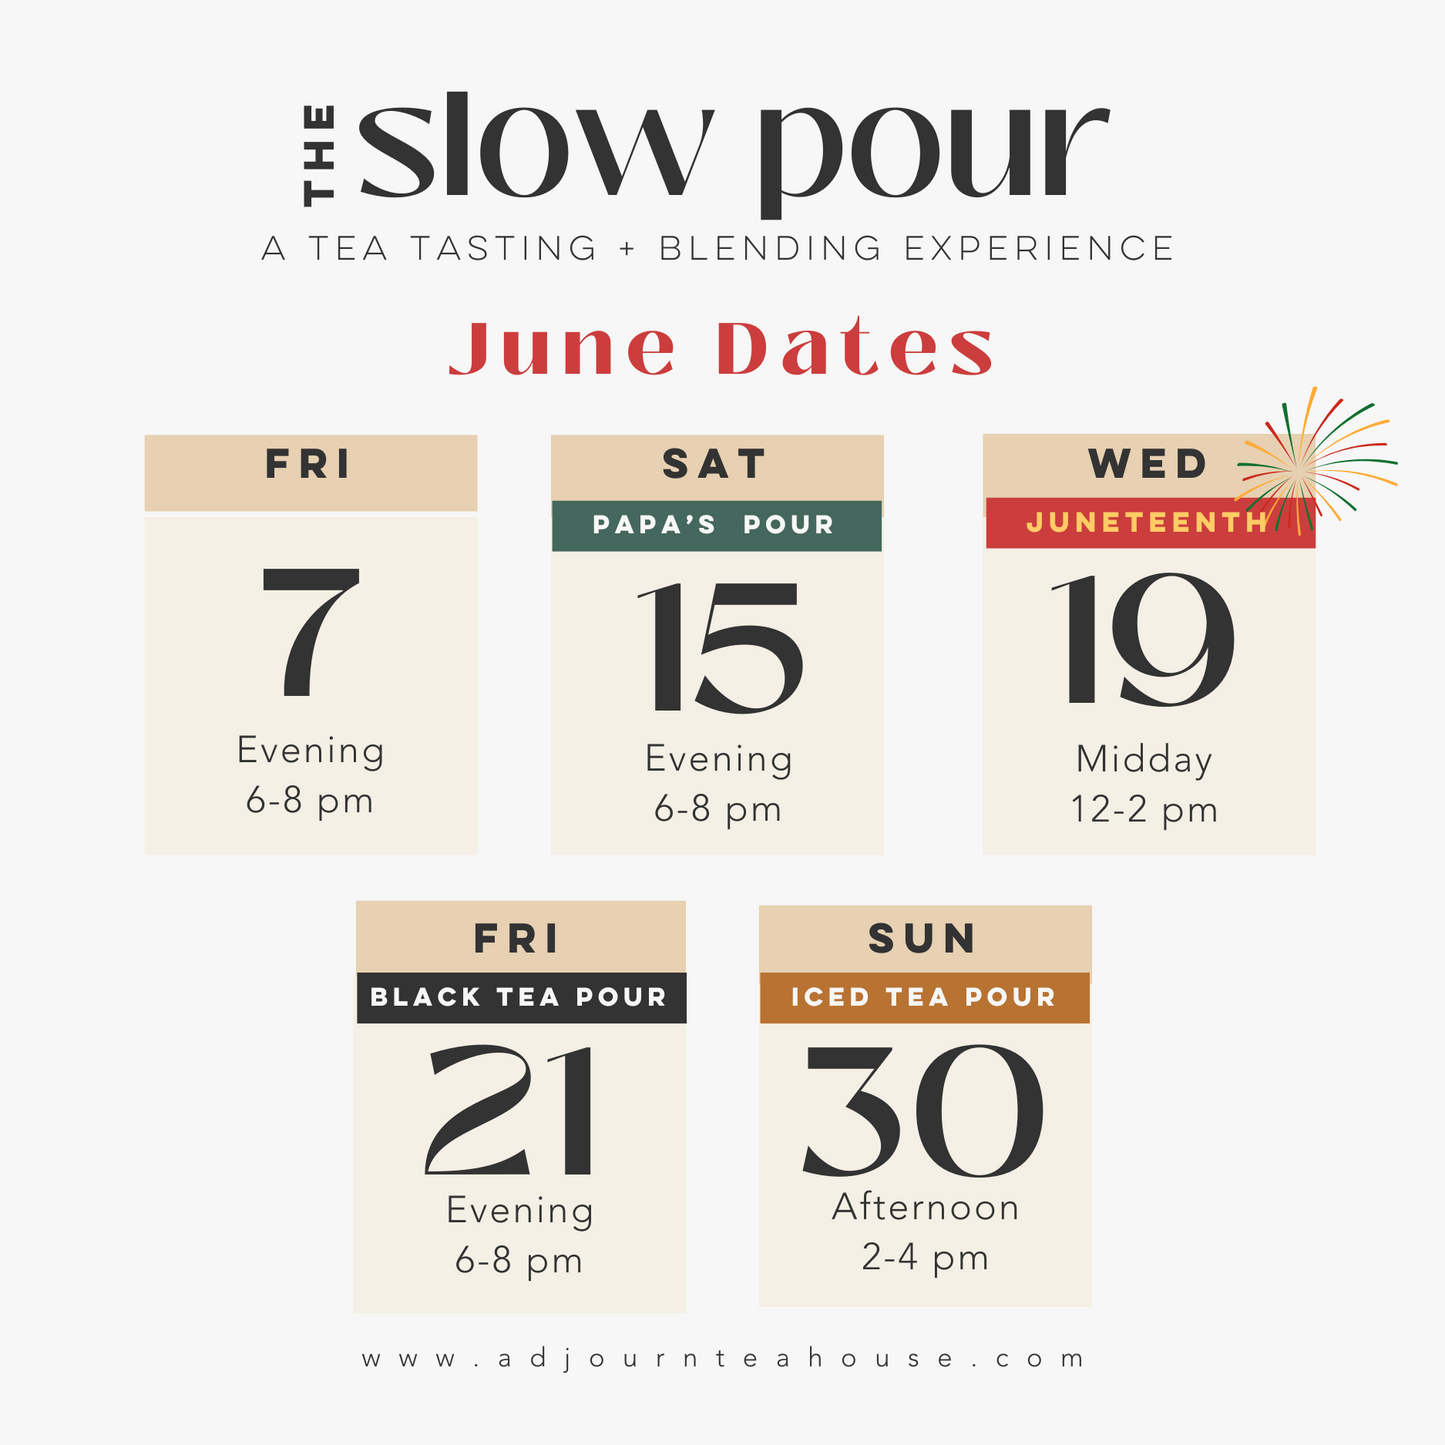 June Slow Pour Experience